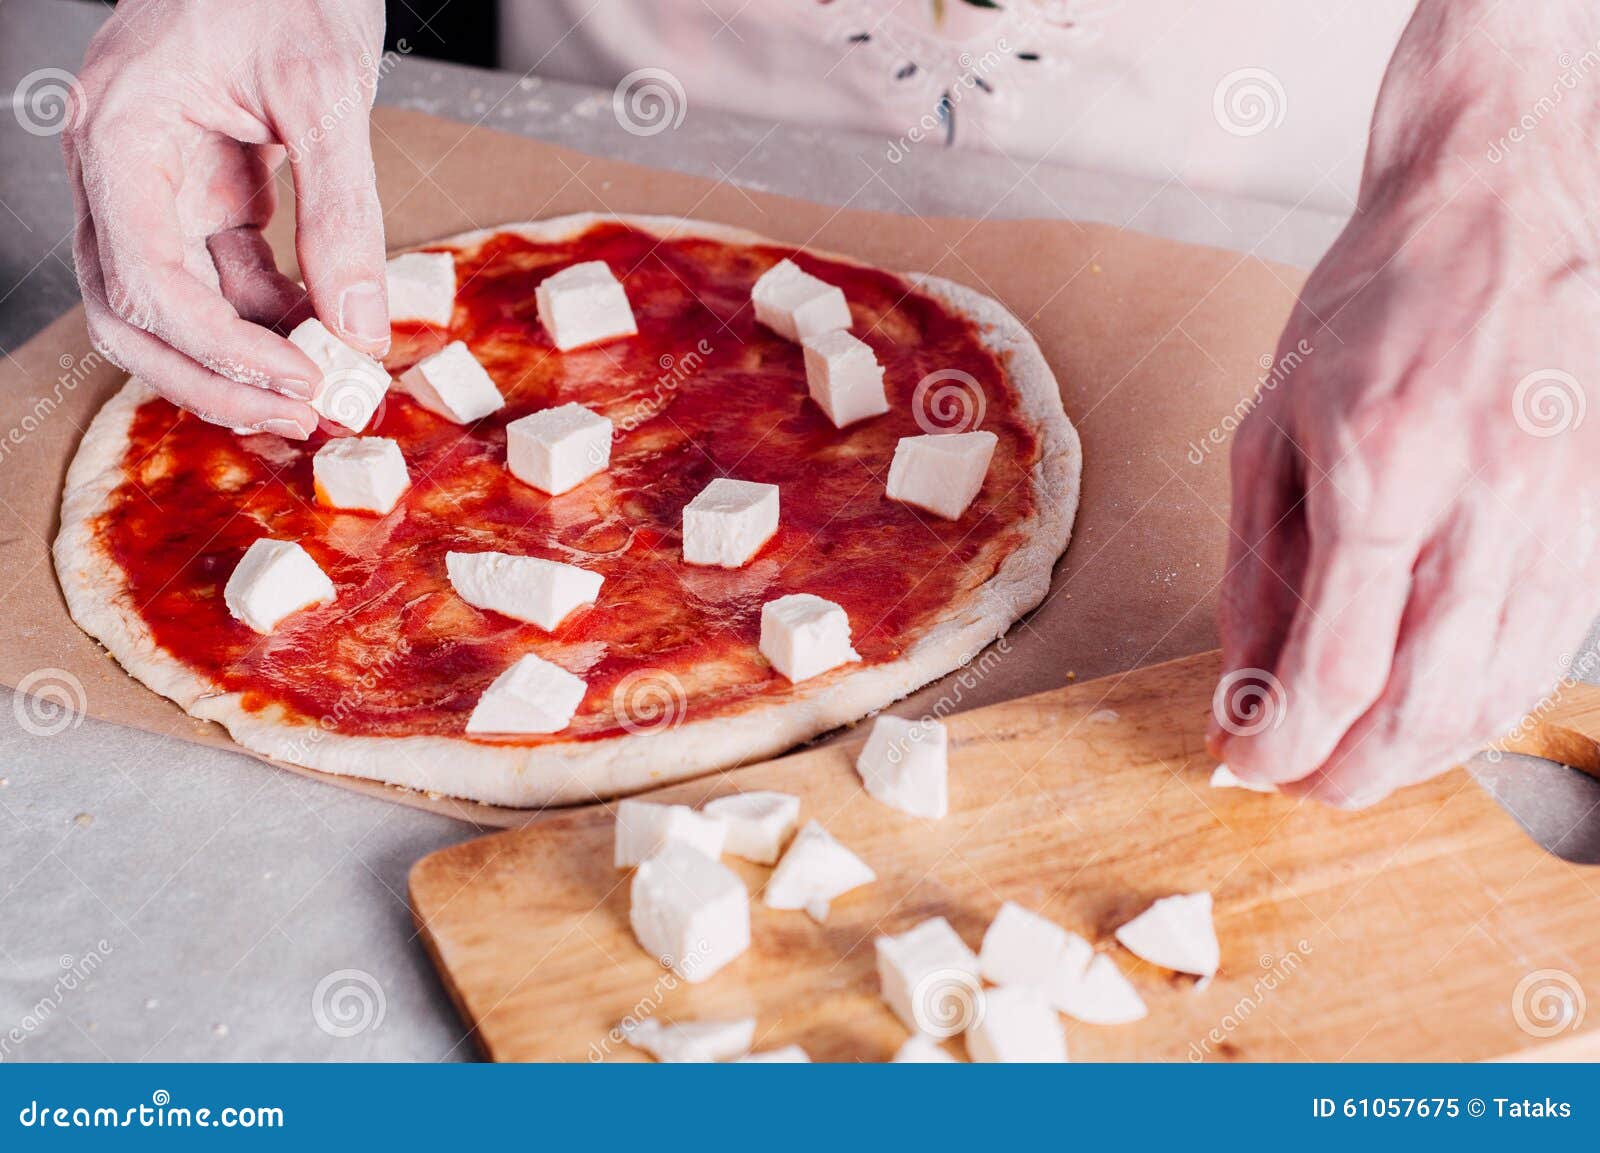 что ложат в пиццу на тесто фото 115